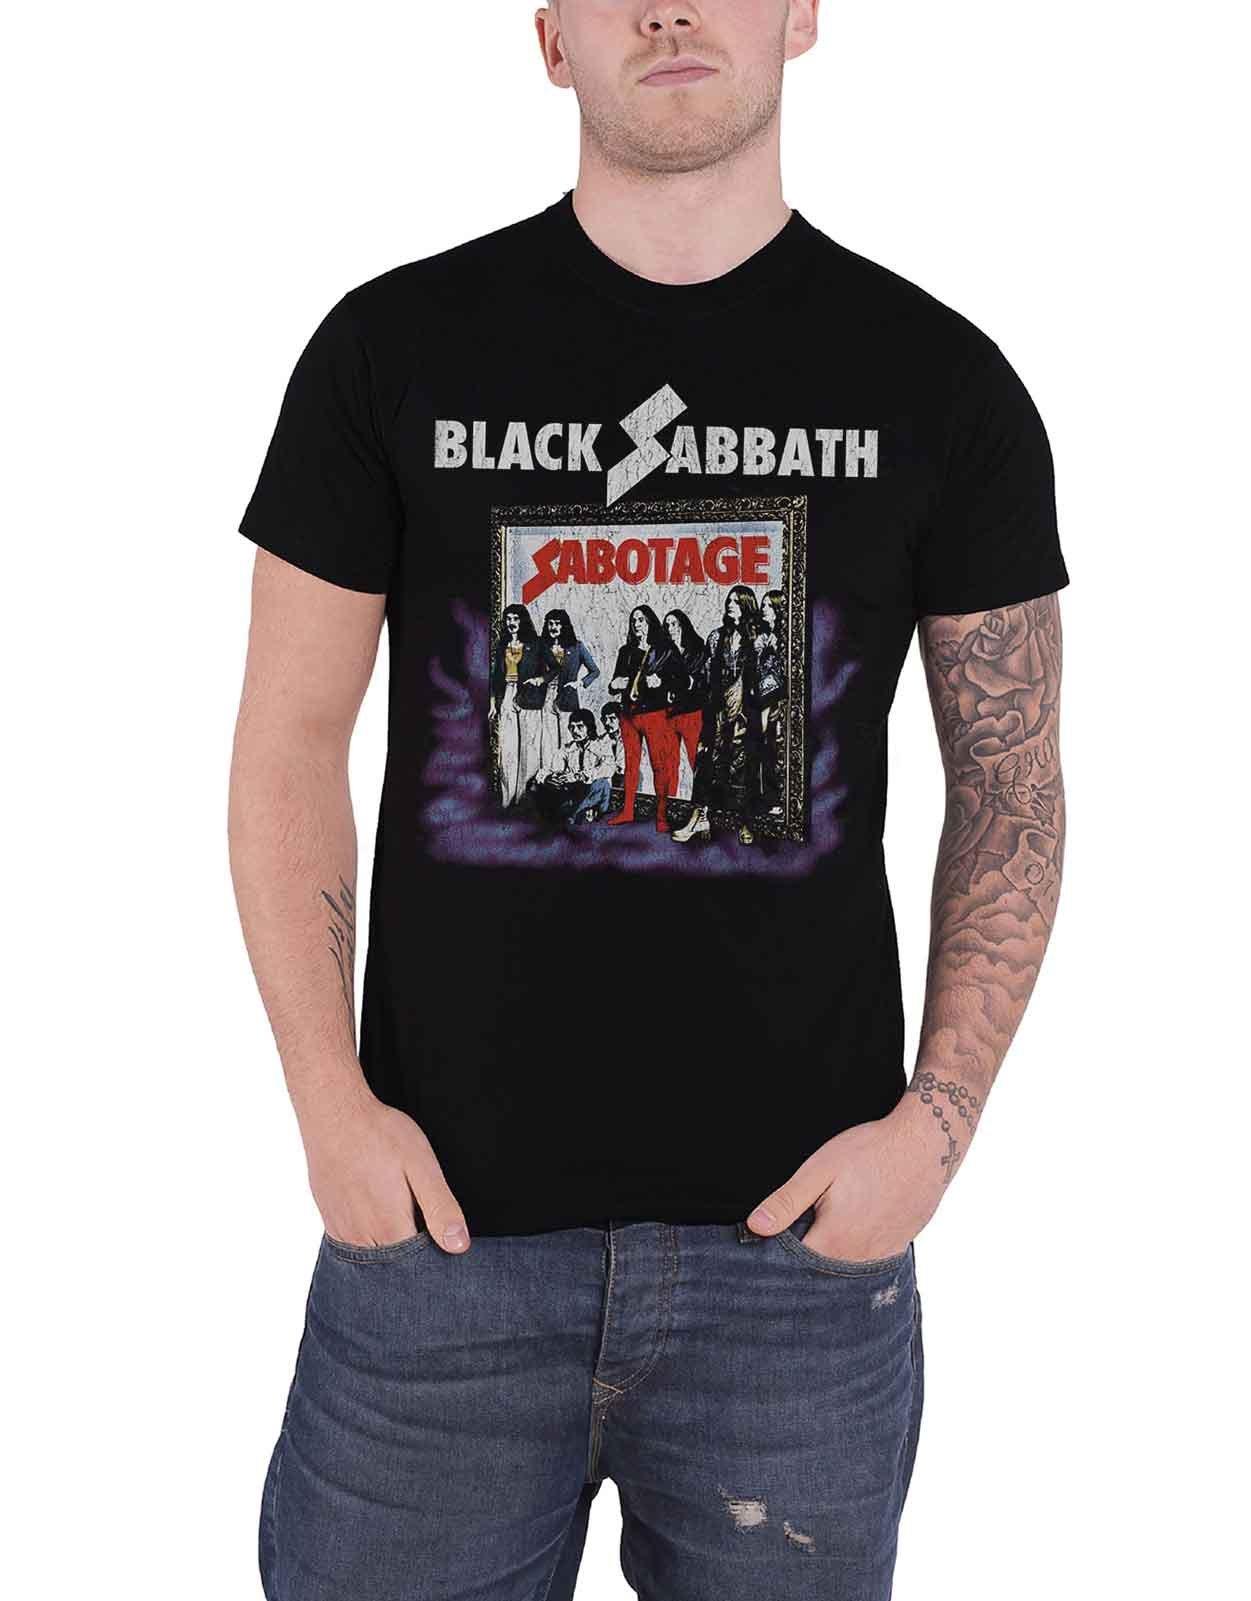 Футболка Sabotage Vintage с потертостями Black Sabbath, черный black sabbath black sabbath sabotage